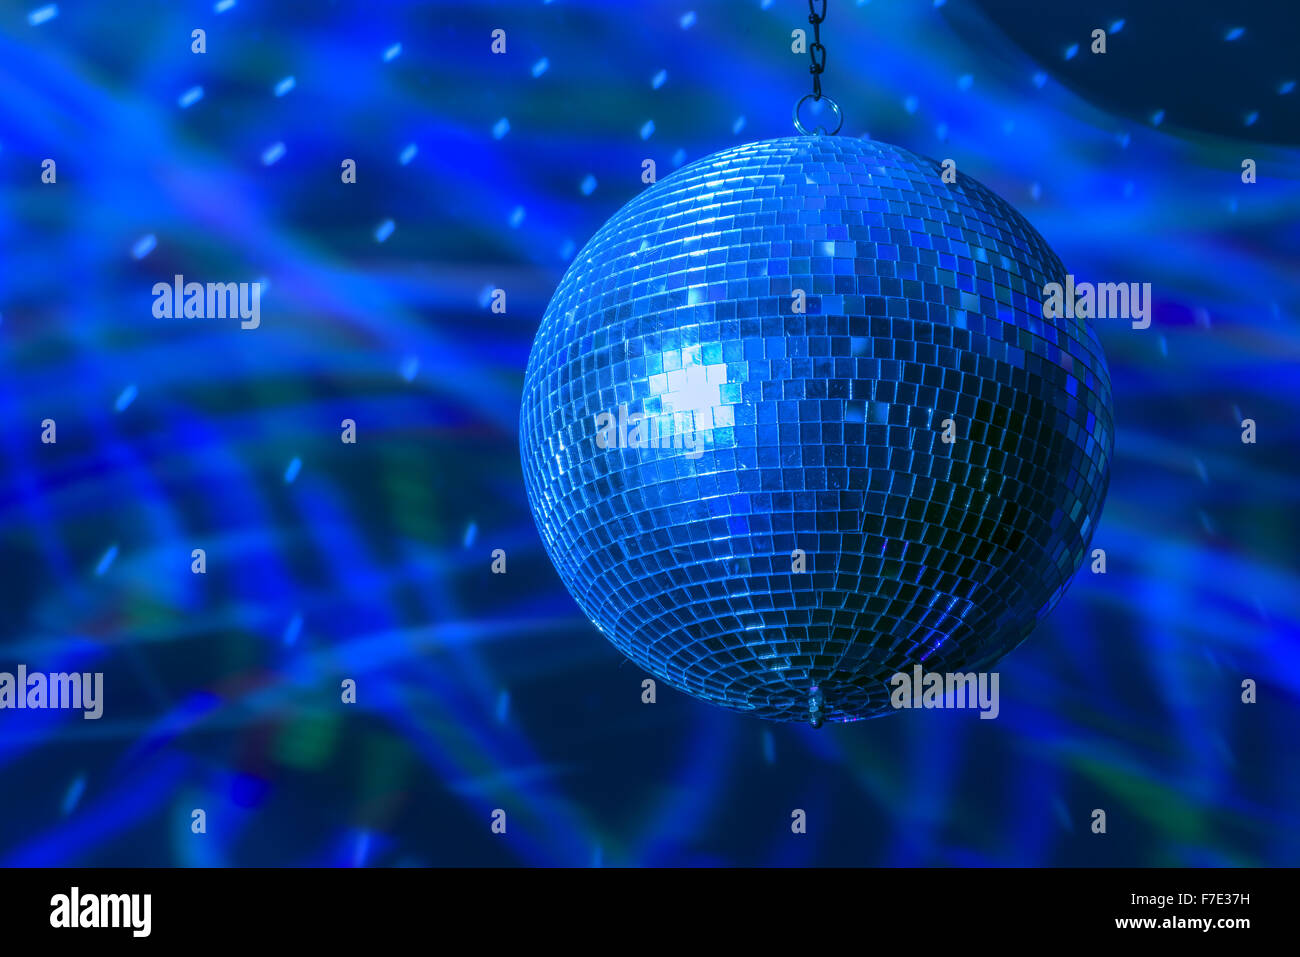 Boule disco background close up Banque D'Images